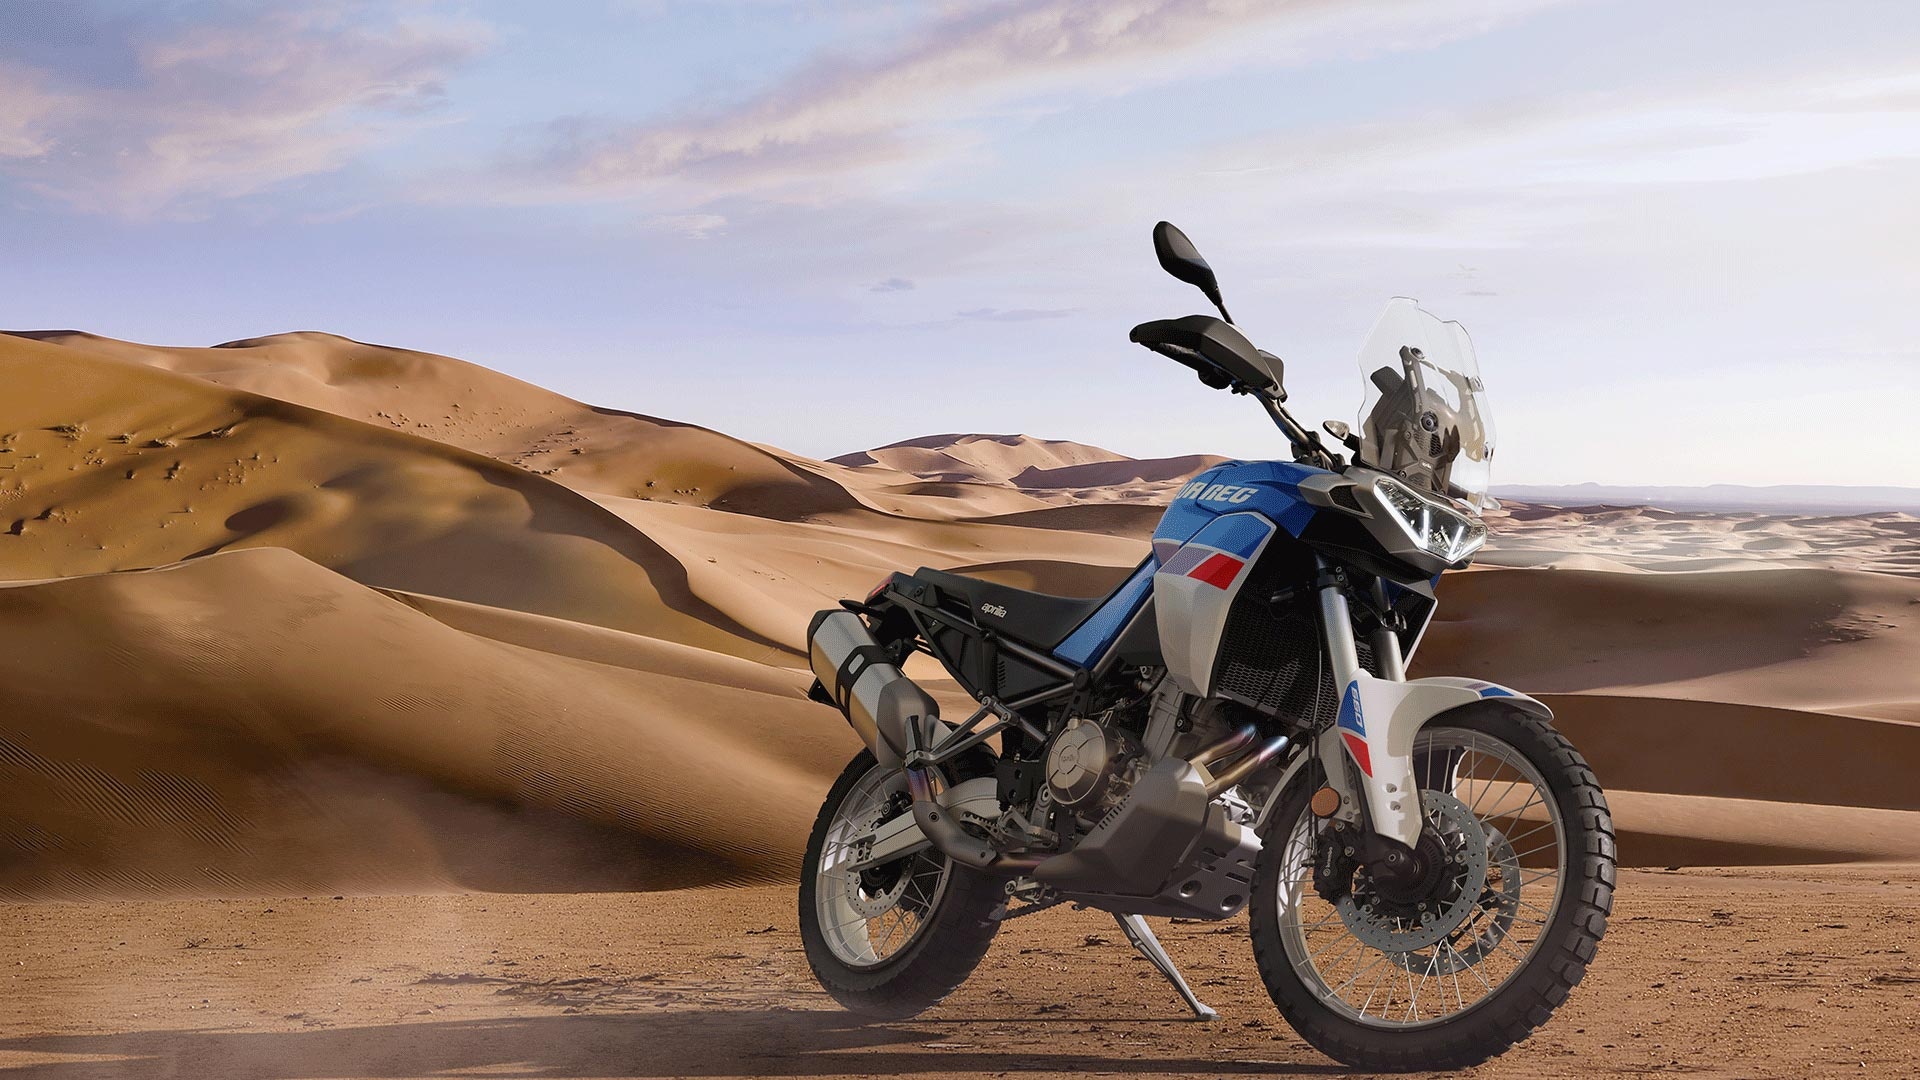 Aprilia Tuareg 660, 80hp on tap, Asphalt and rubber, Adventure bike, 1920x1080 Full HD Desktop